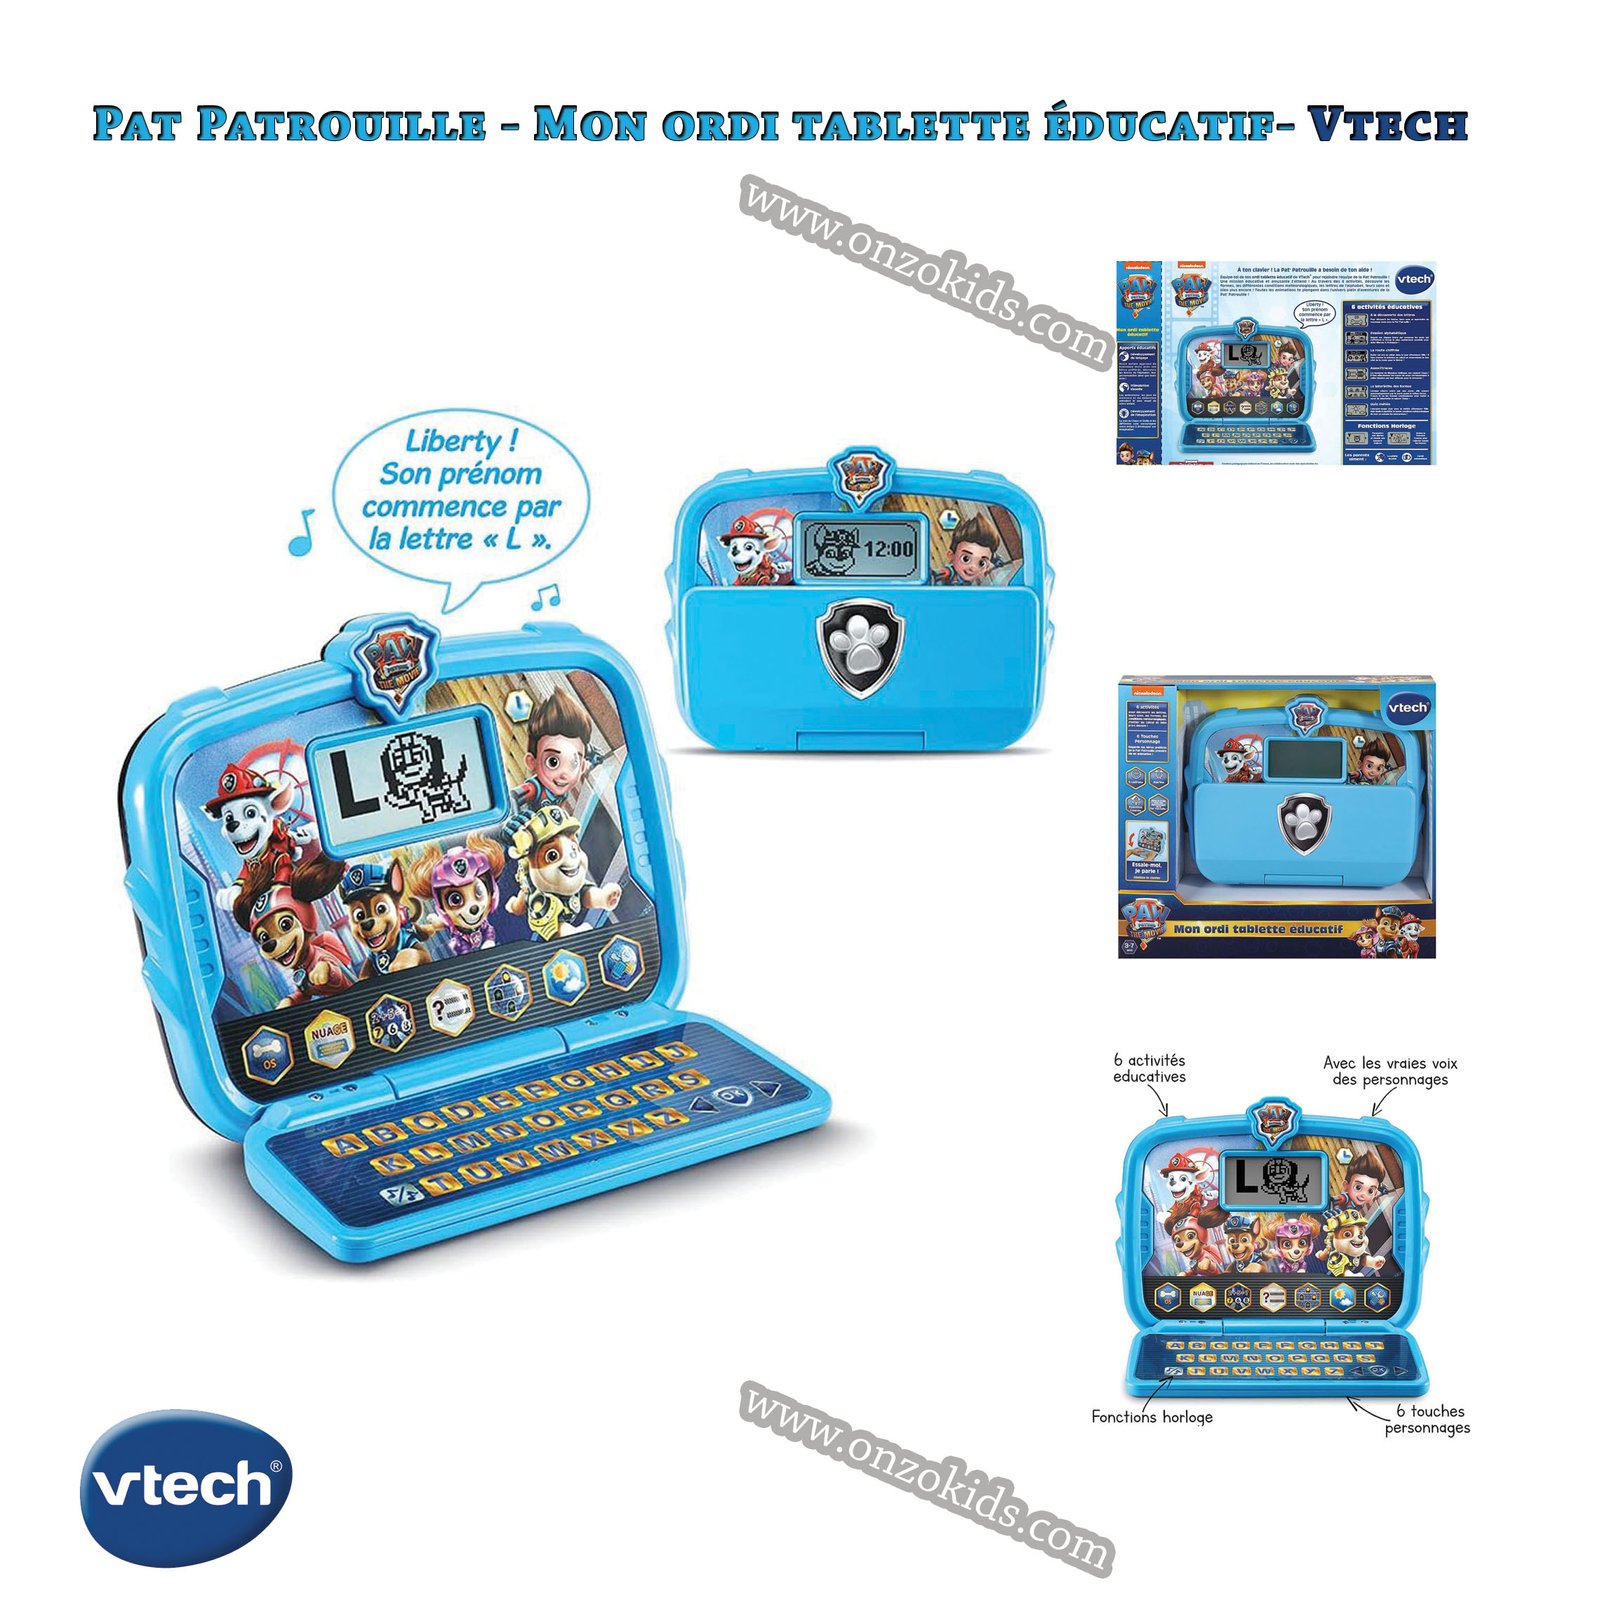 Vtech La pat patrouille – Mon ordi tablette éducatif -FR